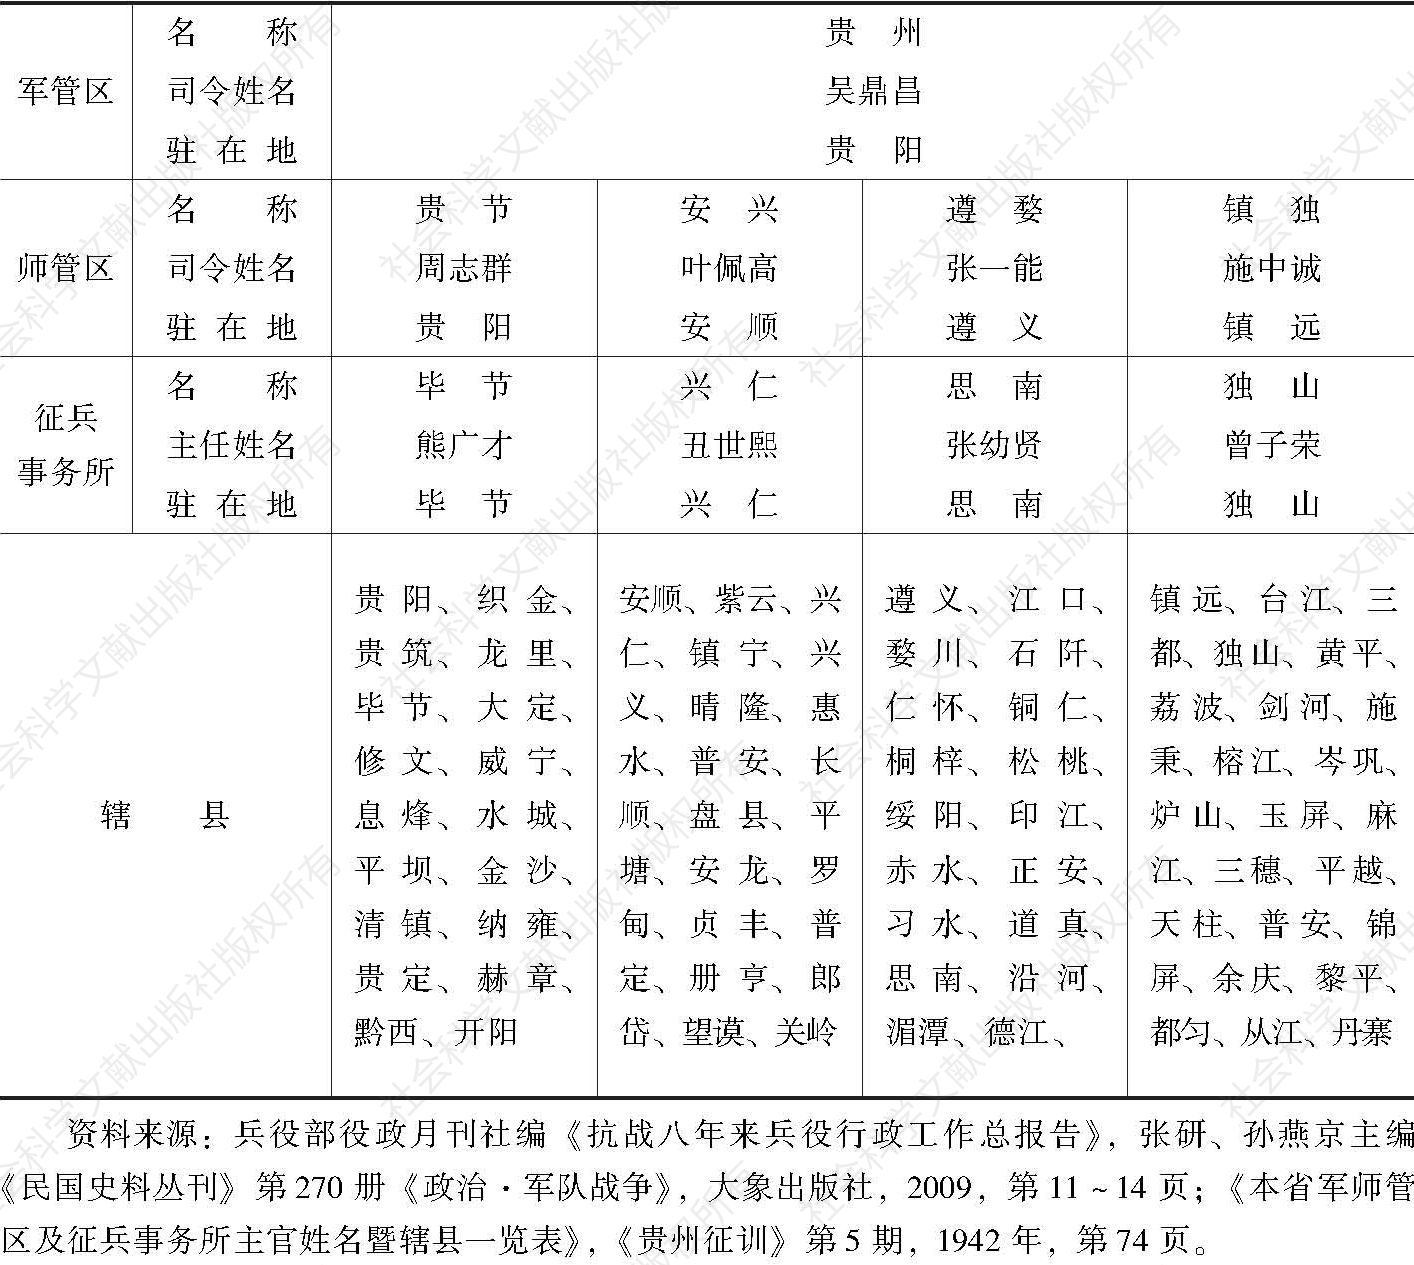 表1 1942年贵州省军师管区及征兵事务所主官姓名暨辖县一览